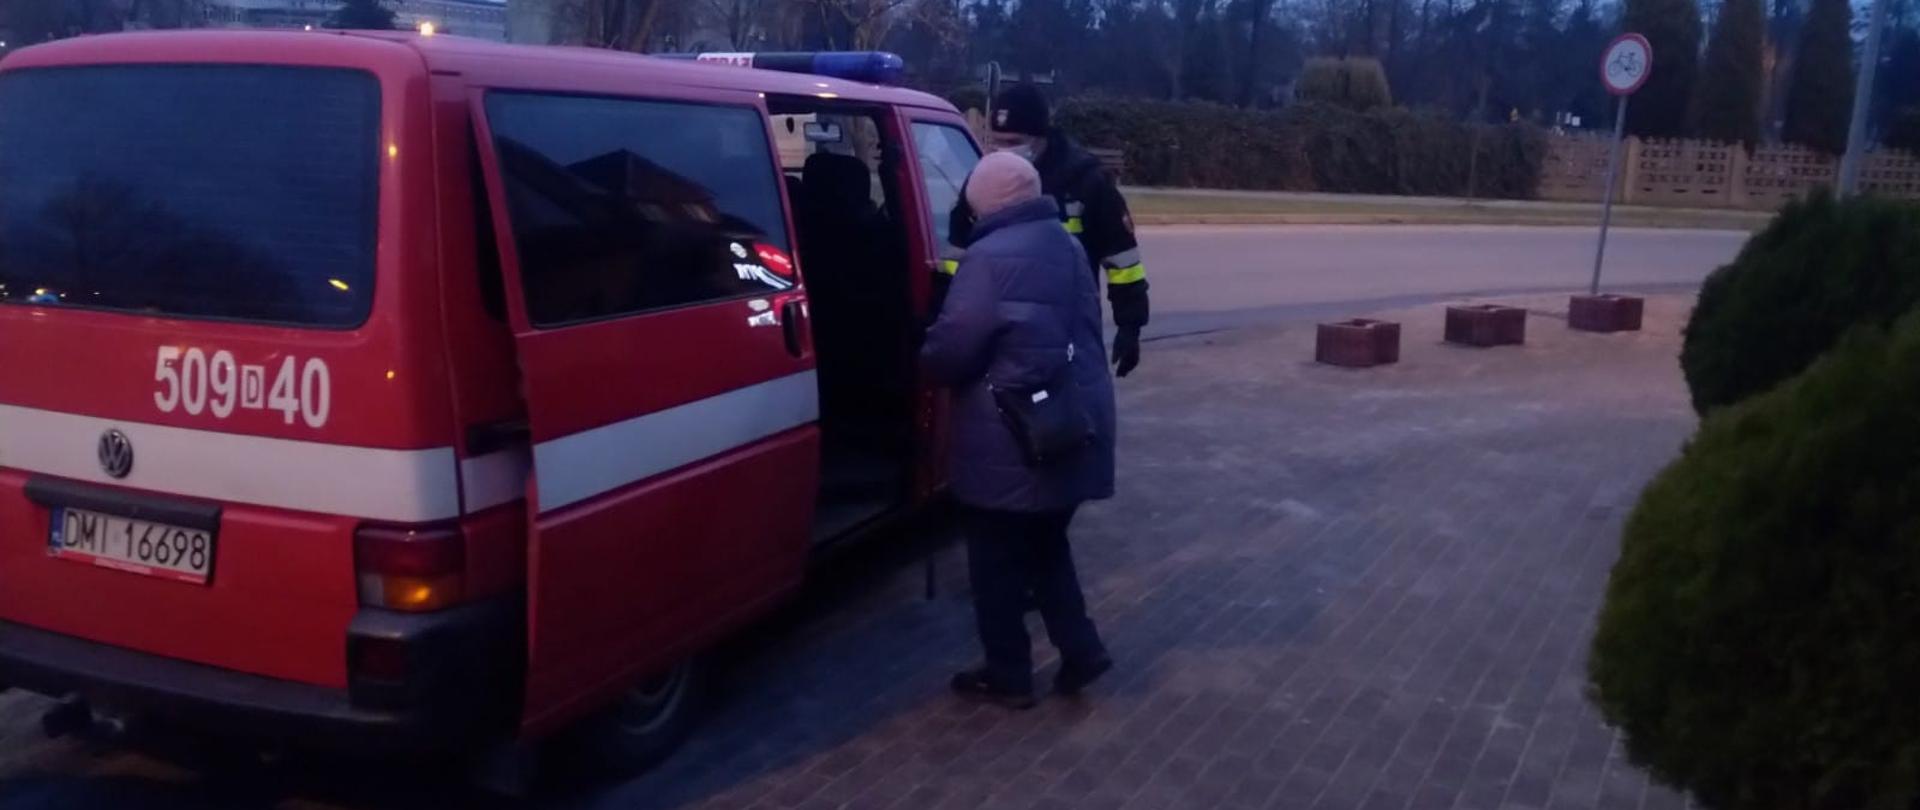 Czerwony bus straży pożarnej do którego wsiada starsza kobieta w asyście strażaka